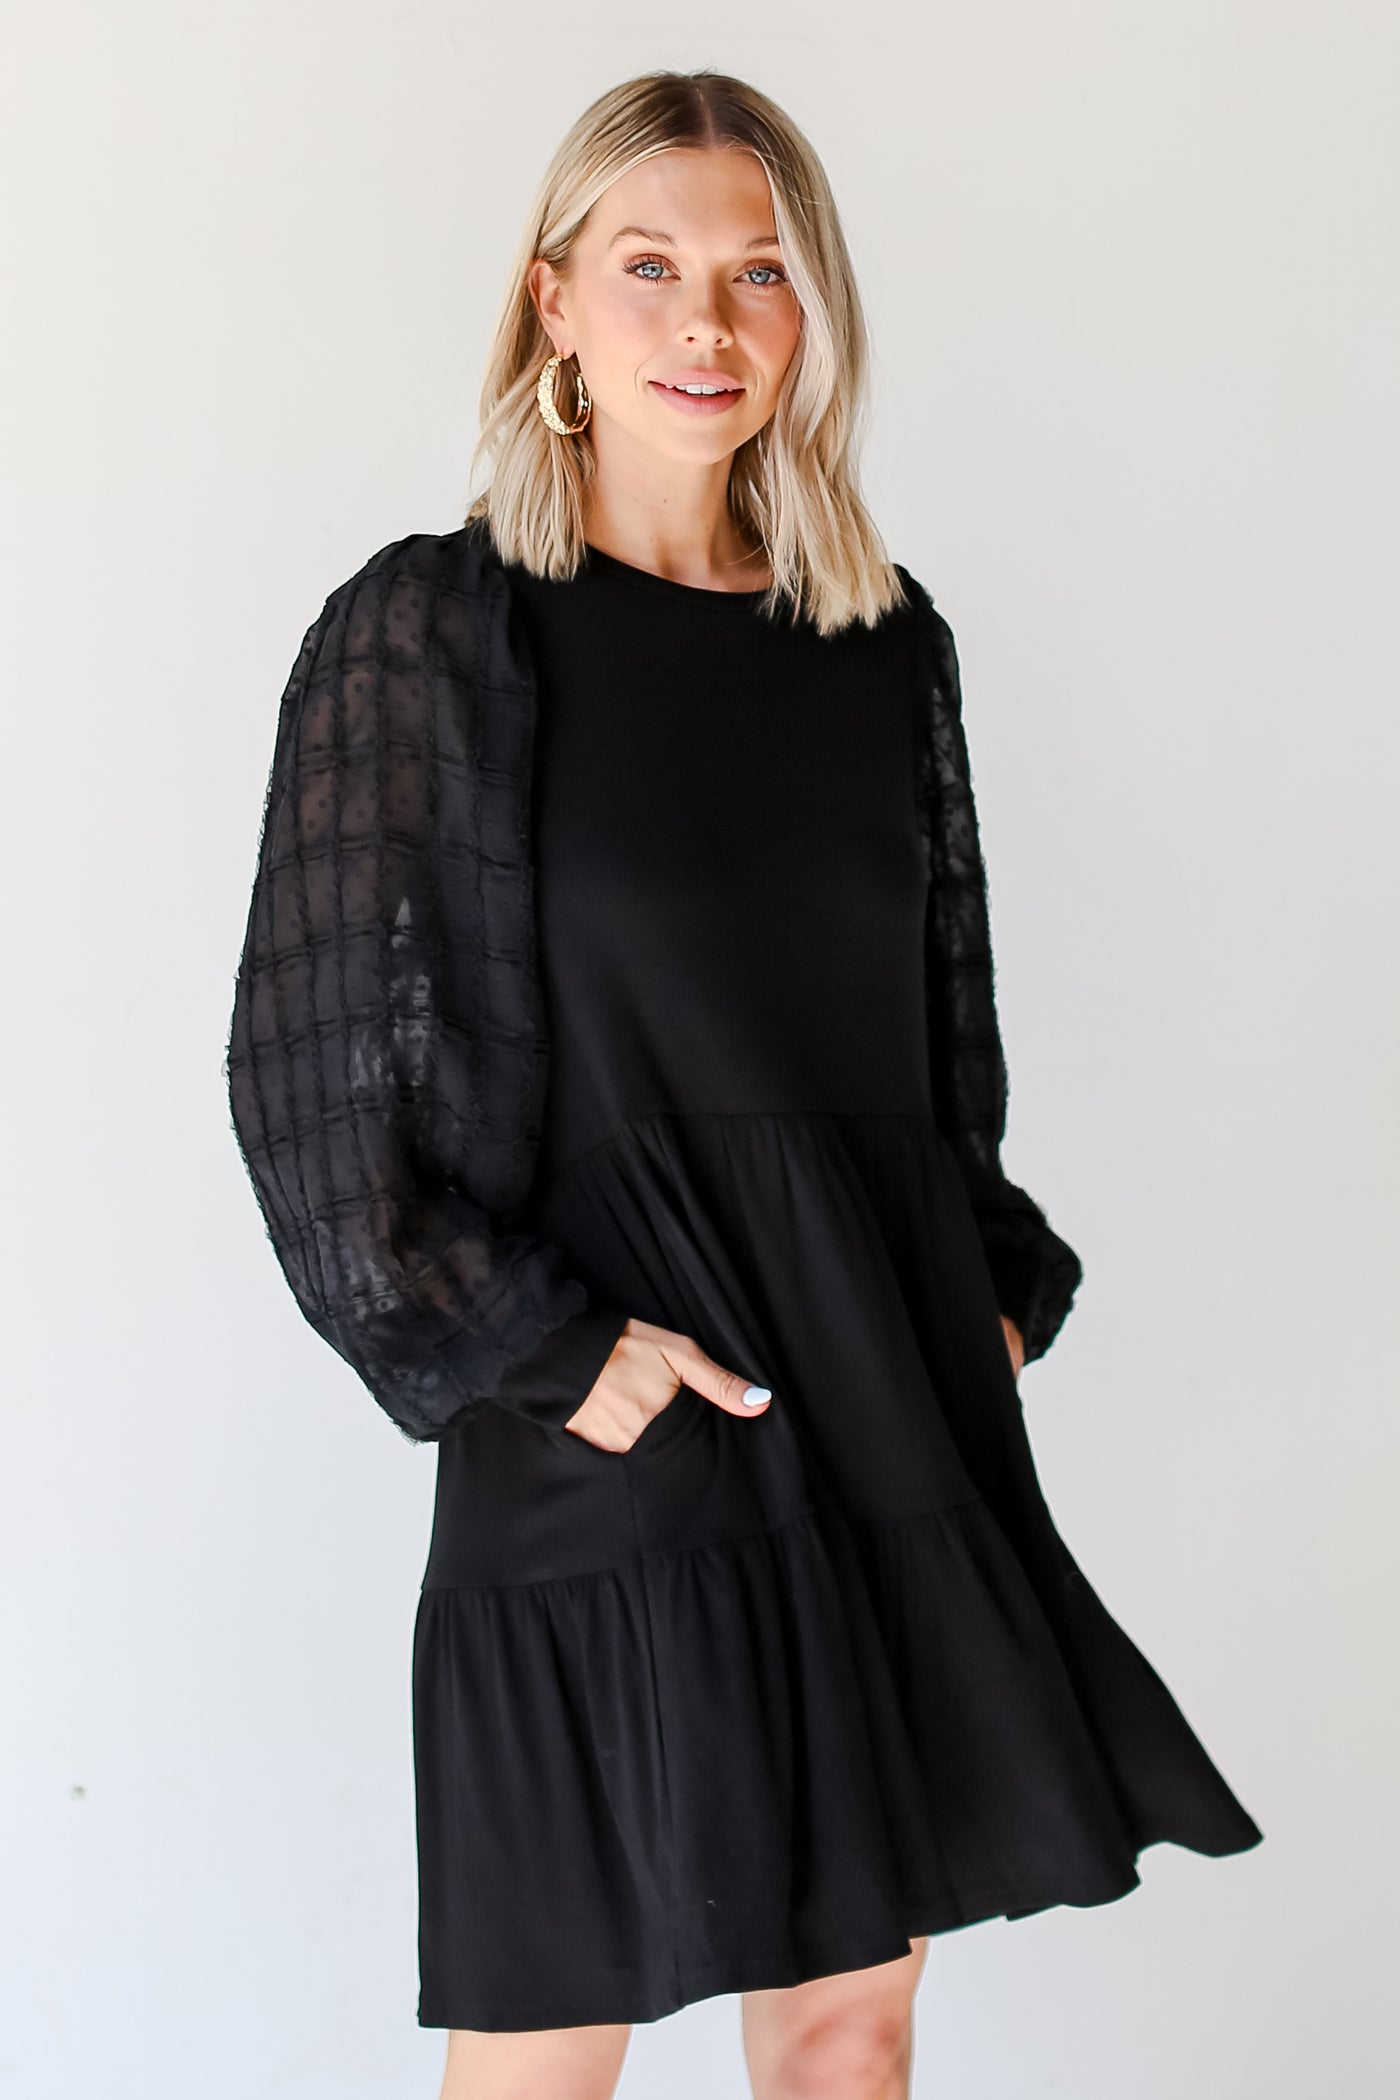 model wearing a black Tiered Mini Dress